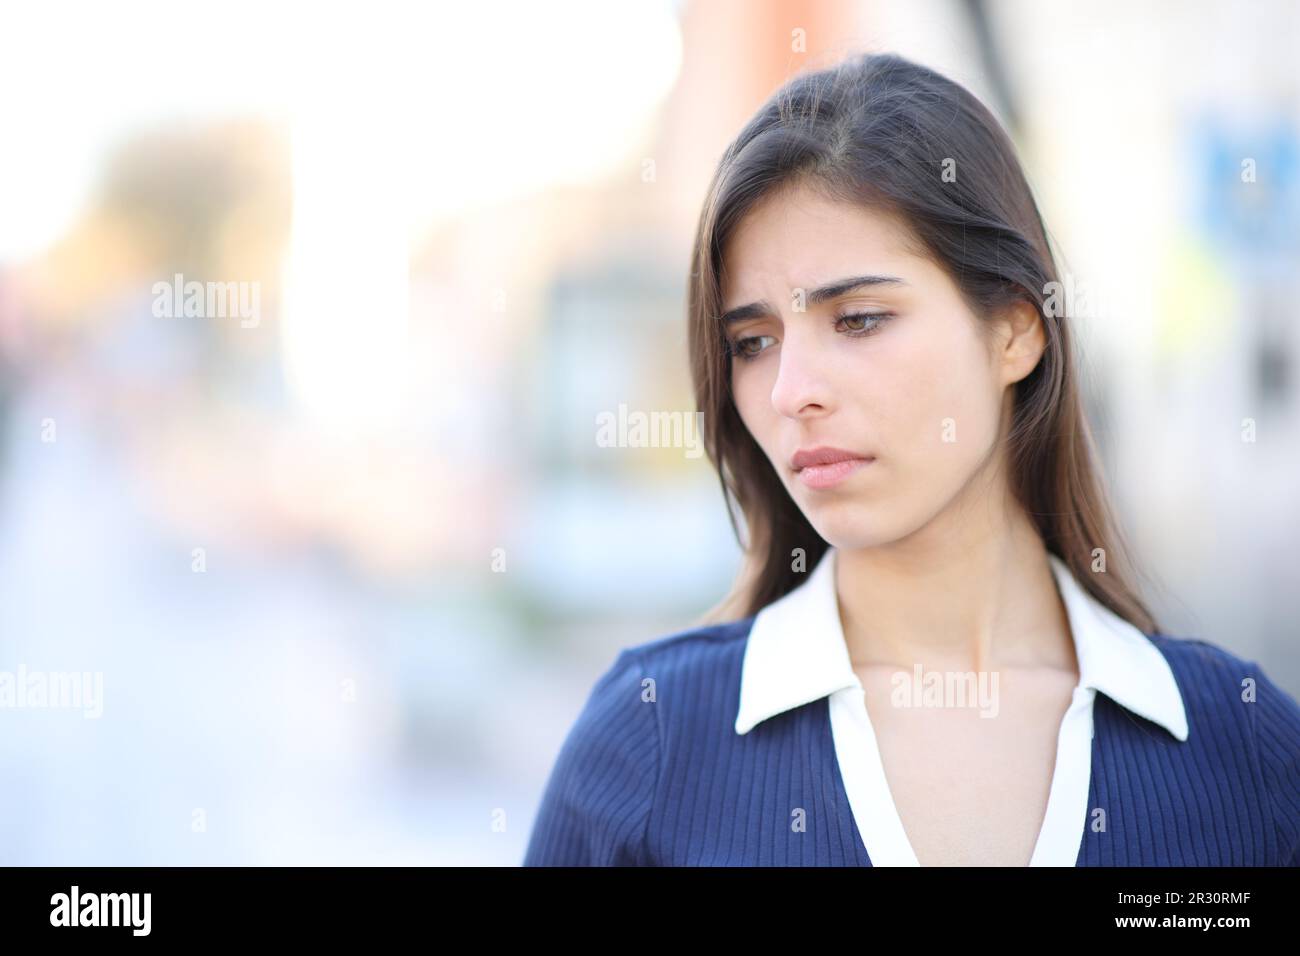 Traurige Frau, die sich beschwert, als sie auf der Straße runterschaute Stockfoto